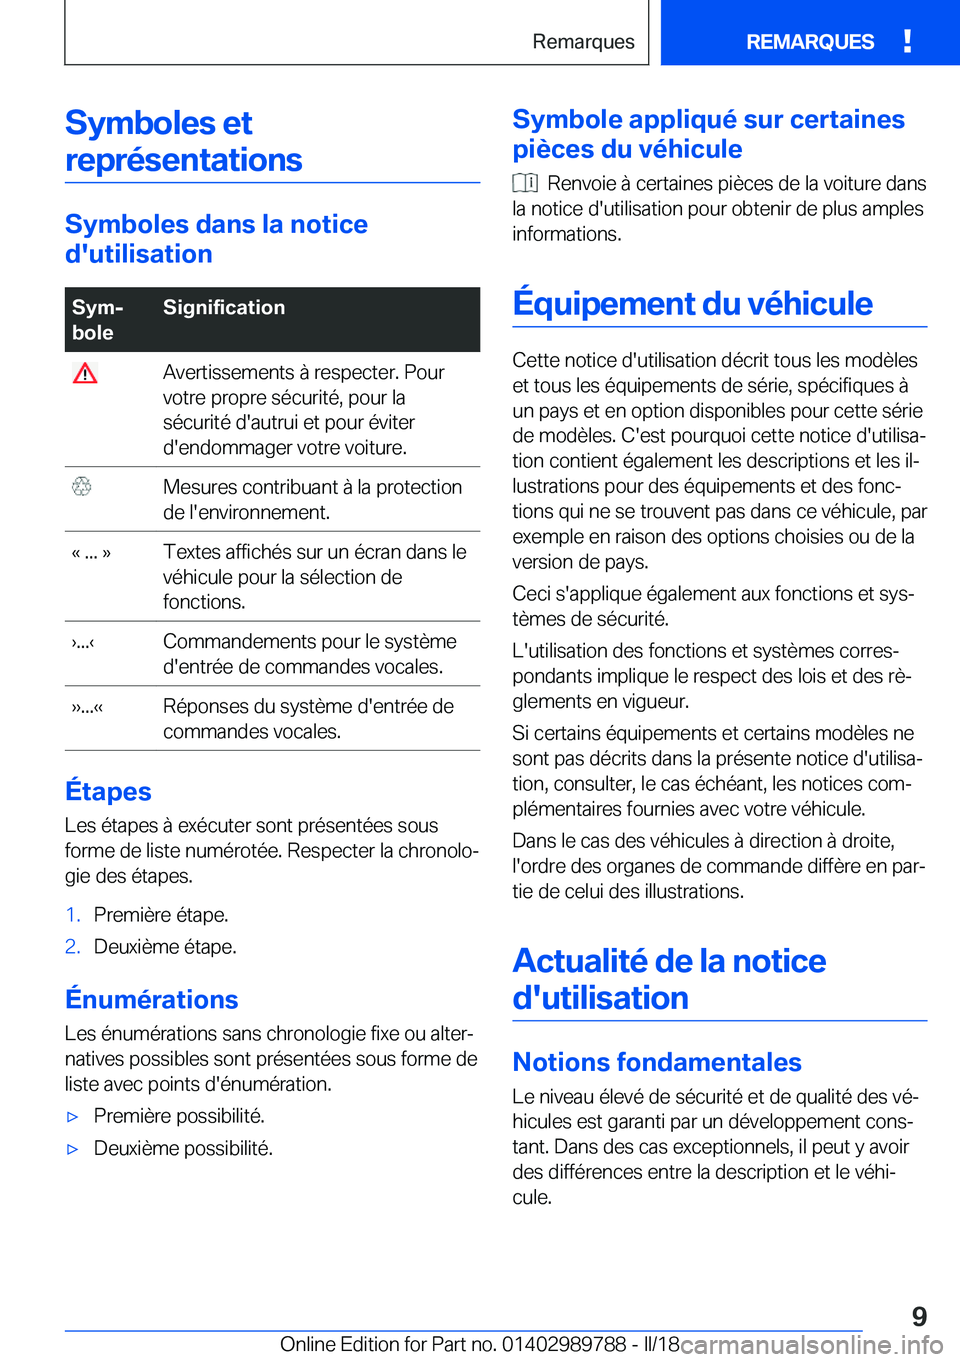 BMW M5 2018  Notices Demploi (in French) �S�y�m�b�o�l�e�s��e�t�r�e�p�r�é�s�e�n�t�a�t�i�o�n�s
�S�y�m�b�o�l�e�s��d�a�n�s��l�a��n�o�t�i�c�e
�d�'�u�t�i�l�i�s�a�t�i�o�n
�S�y�mj
�b�o�l�e�S�i�g�n�i�f�i�c�a�t�i�o�n� �A�v�e�r�t�i�s�s�e�m�e�